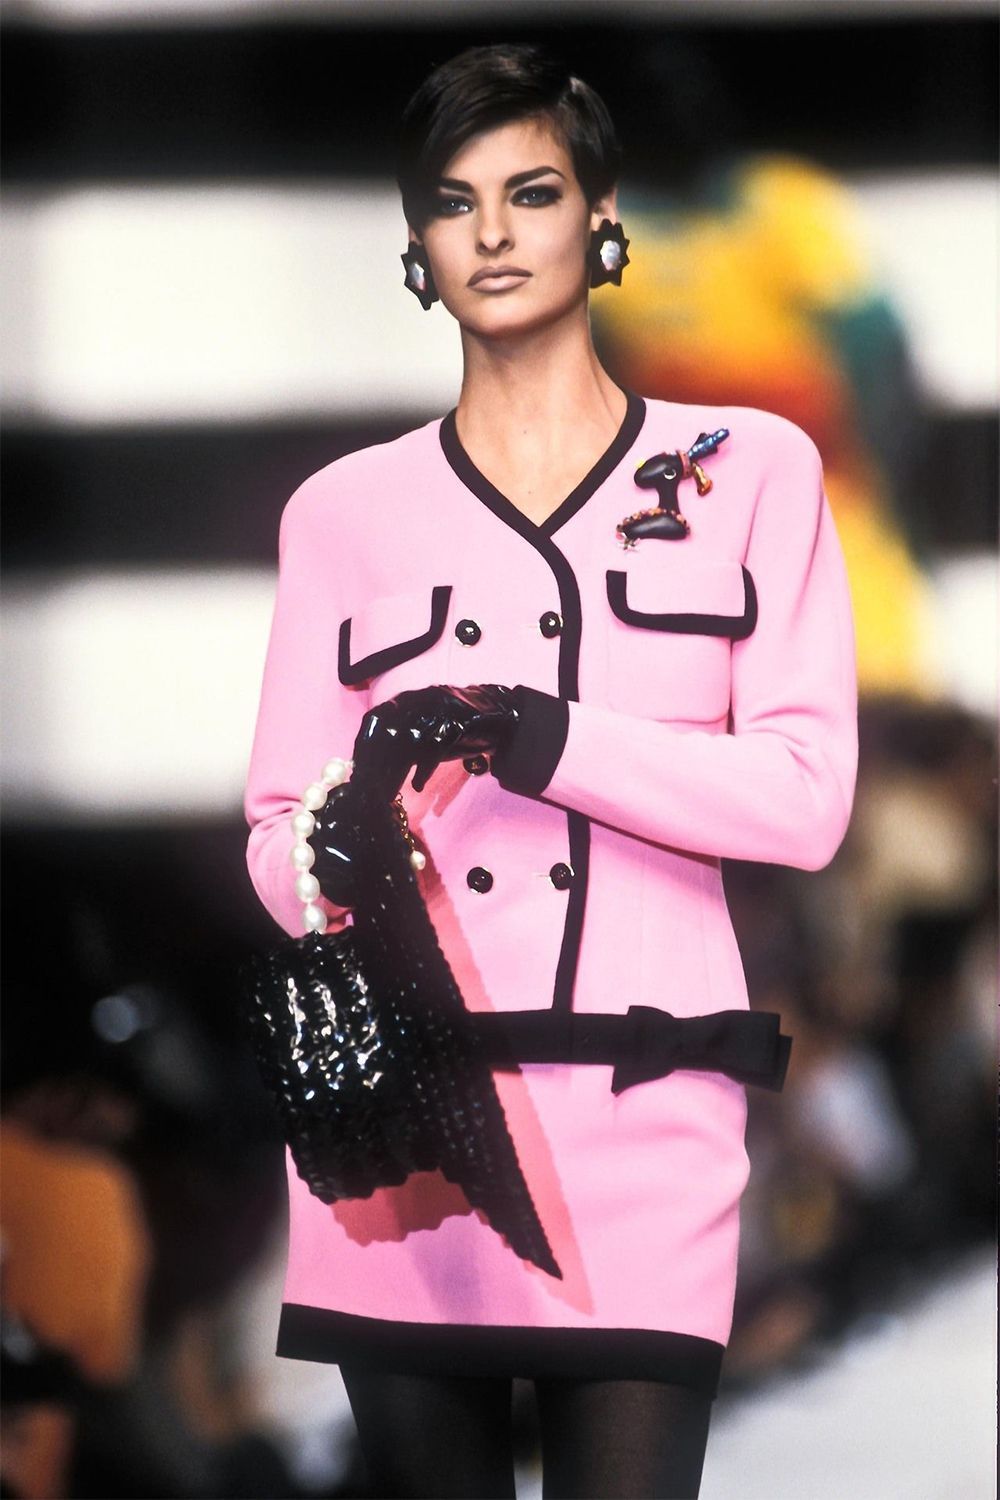 Linda Evangelista e le sue migliori passerelle Il camaleonte che ha dettato tendenza negli anni '90 (e non solo) e suoi momenti più fashion | Image 296481